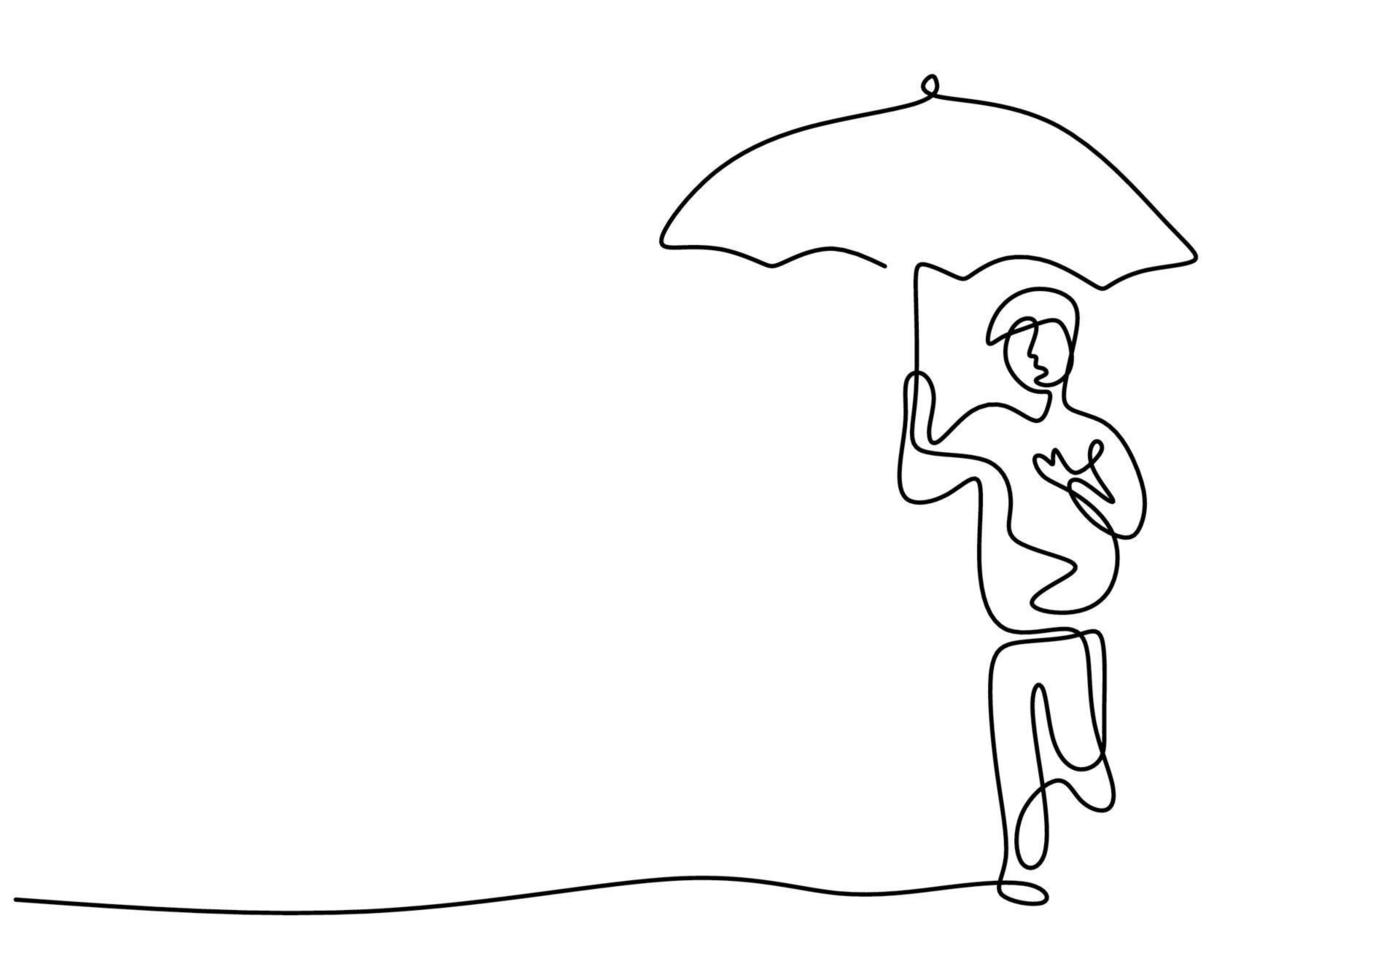 kontinuierliche einzelne gezeichnete eine Linie des kleinen Jungen mit Regenschirm. das Kind geht auf Straßenrand, der Regenschirm im Regen lokalisiert auf weißem Hintergrund hält. Hand gezeichnetes minimalistisches Konzept des Regenzeitthemas vektor